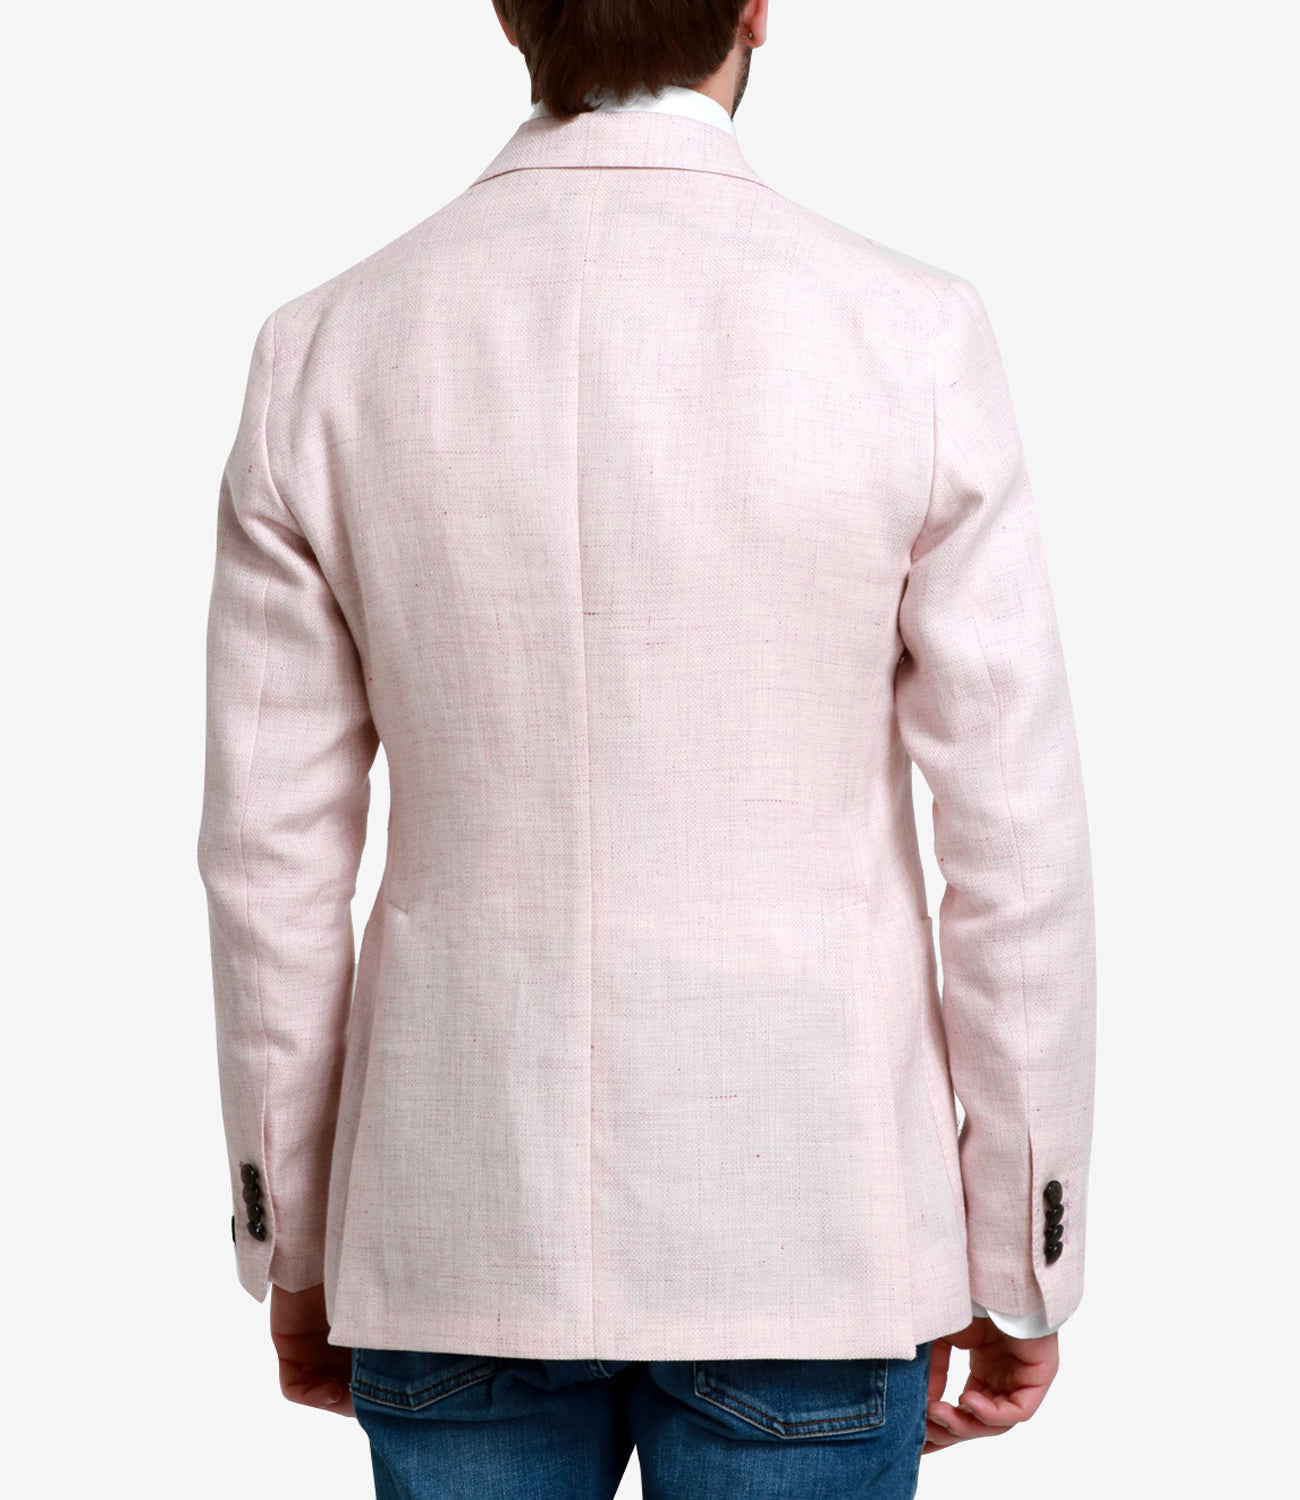 Tagliatore | Pink Jacket